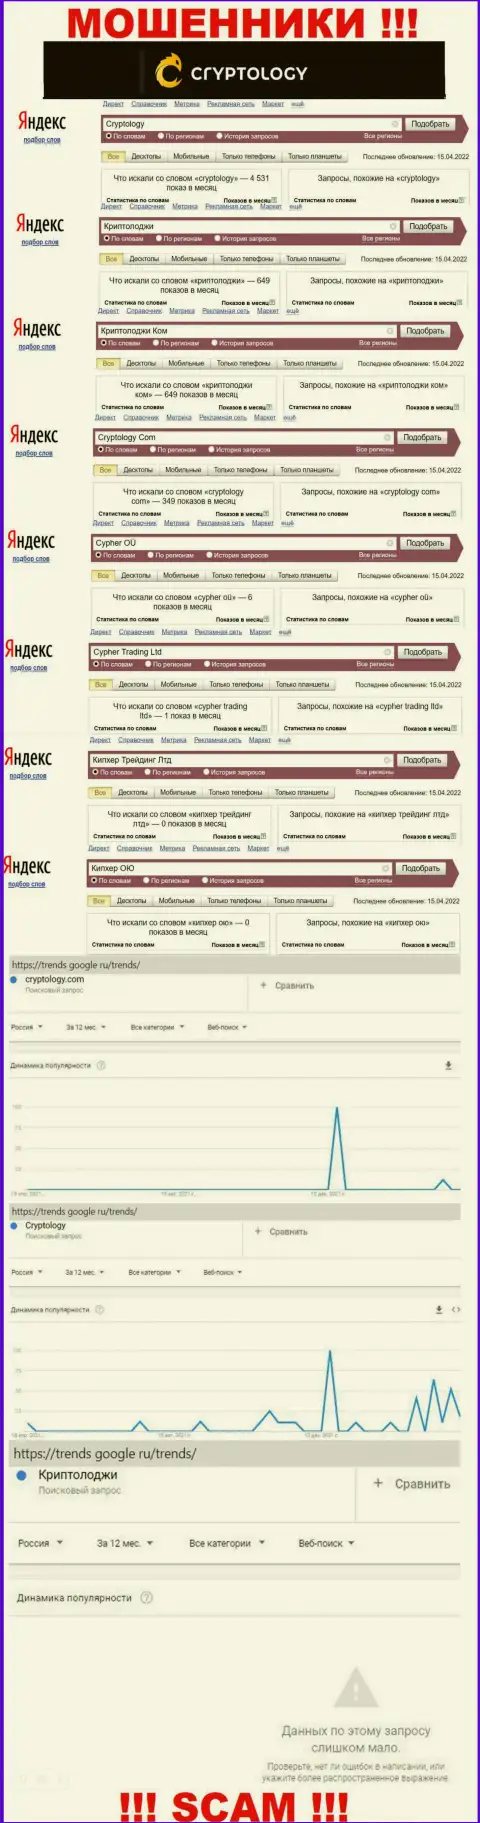 Количество поисковых запросов в поисковиках сети Интернет по бренду мошенников Криптолоджи